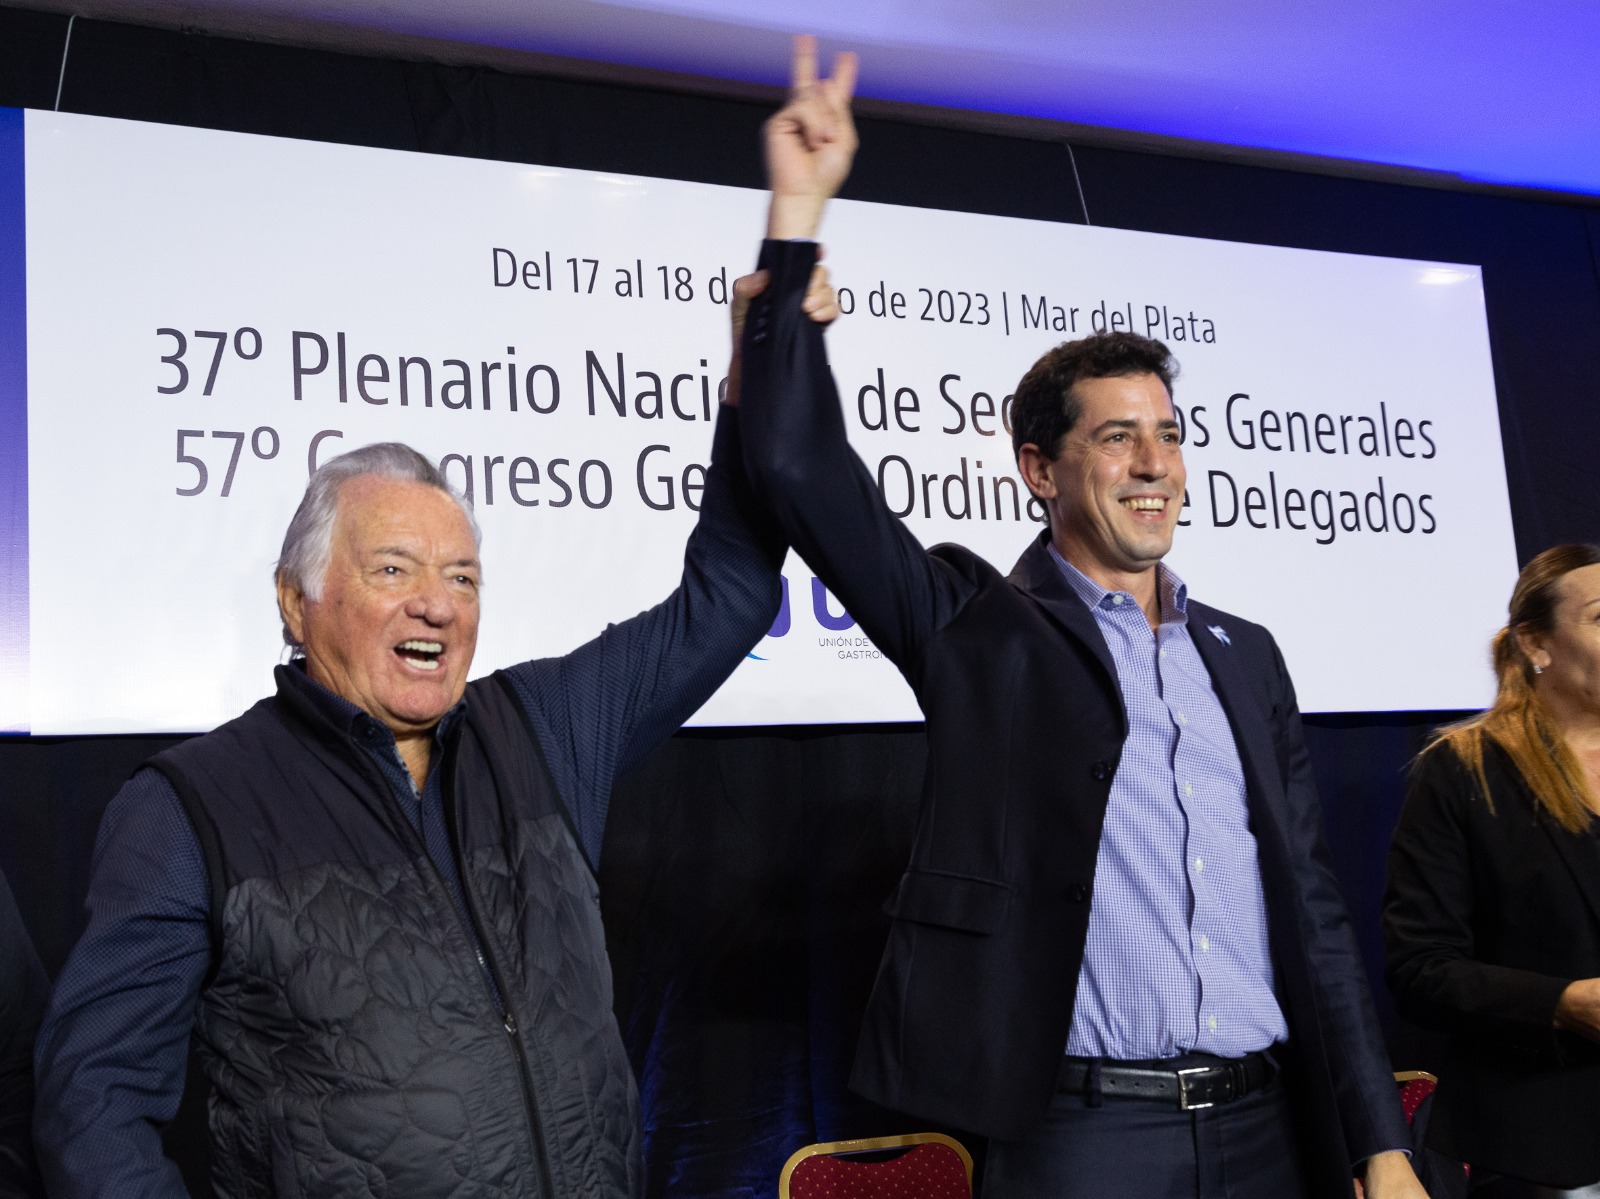 Luis Barrionuevo: “Queremos que Wado de Pedro sea el futuro Presidente de los argentinos”